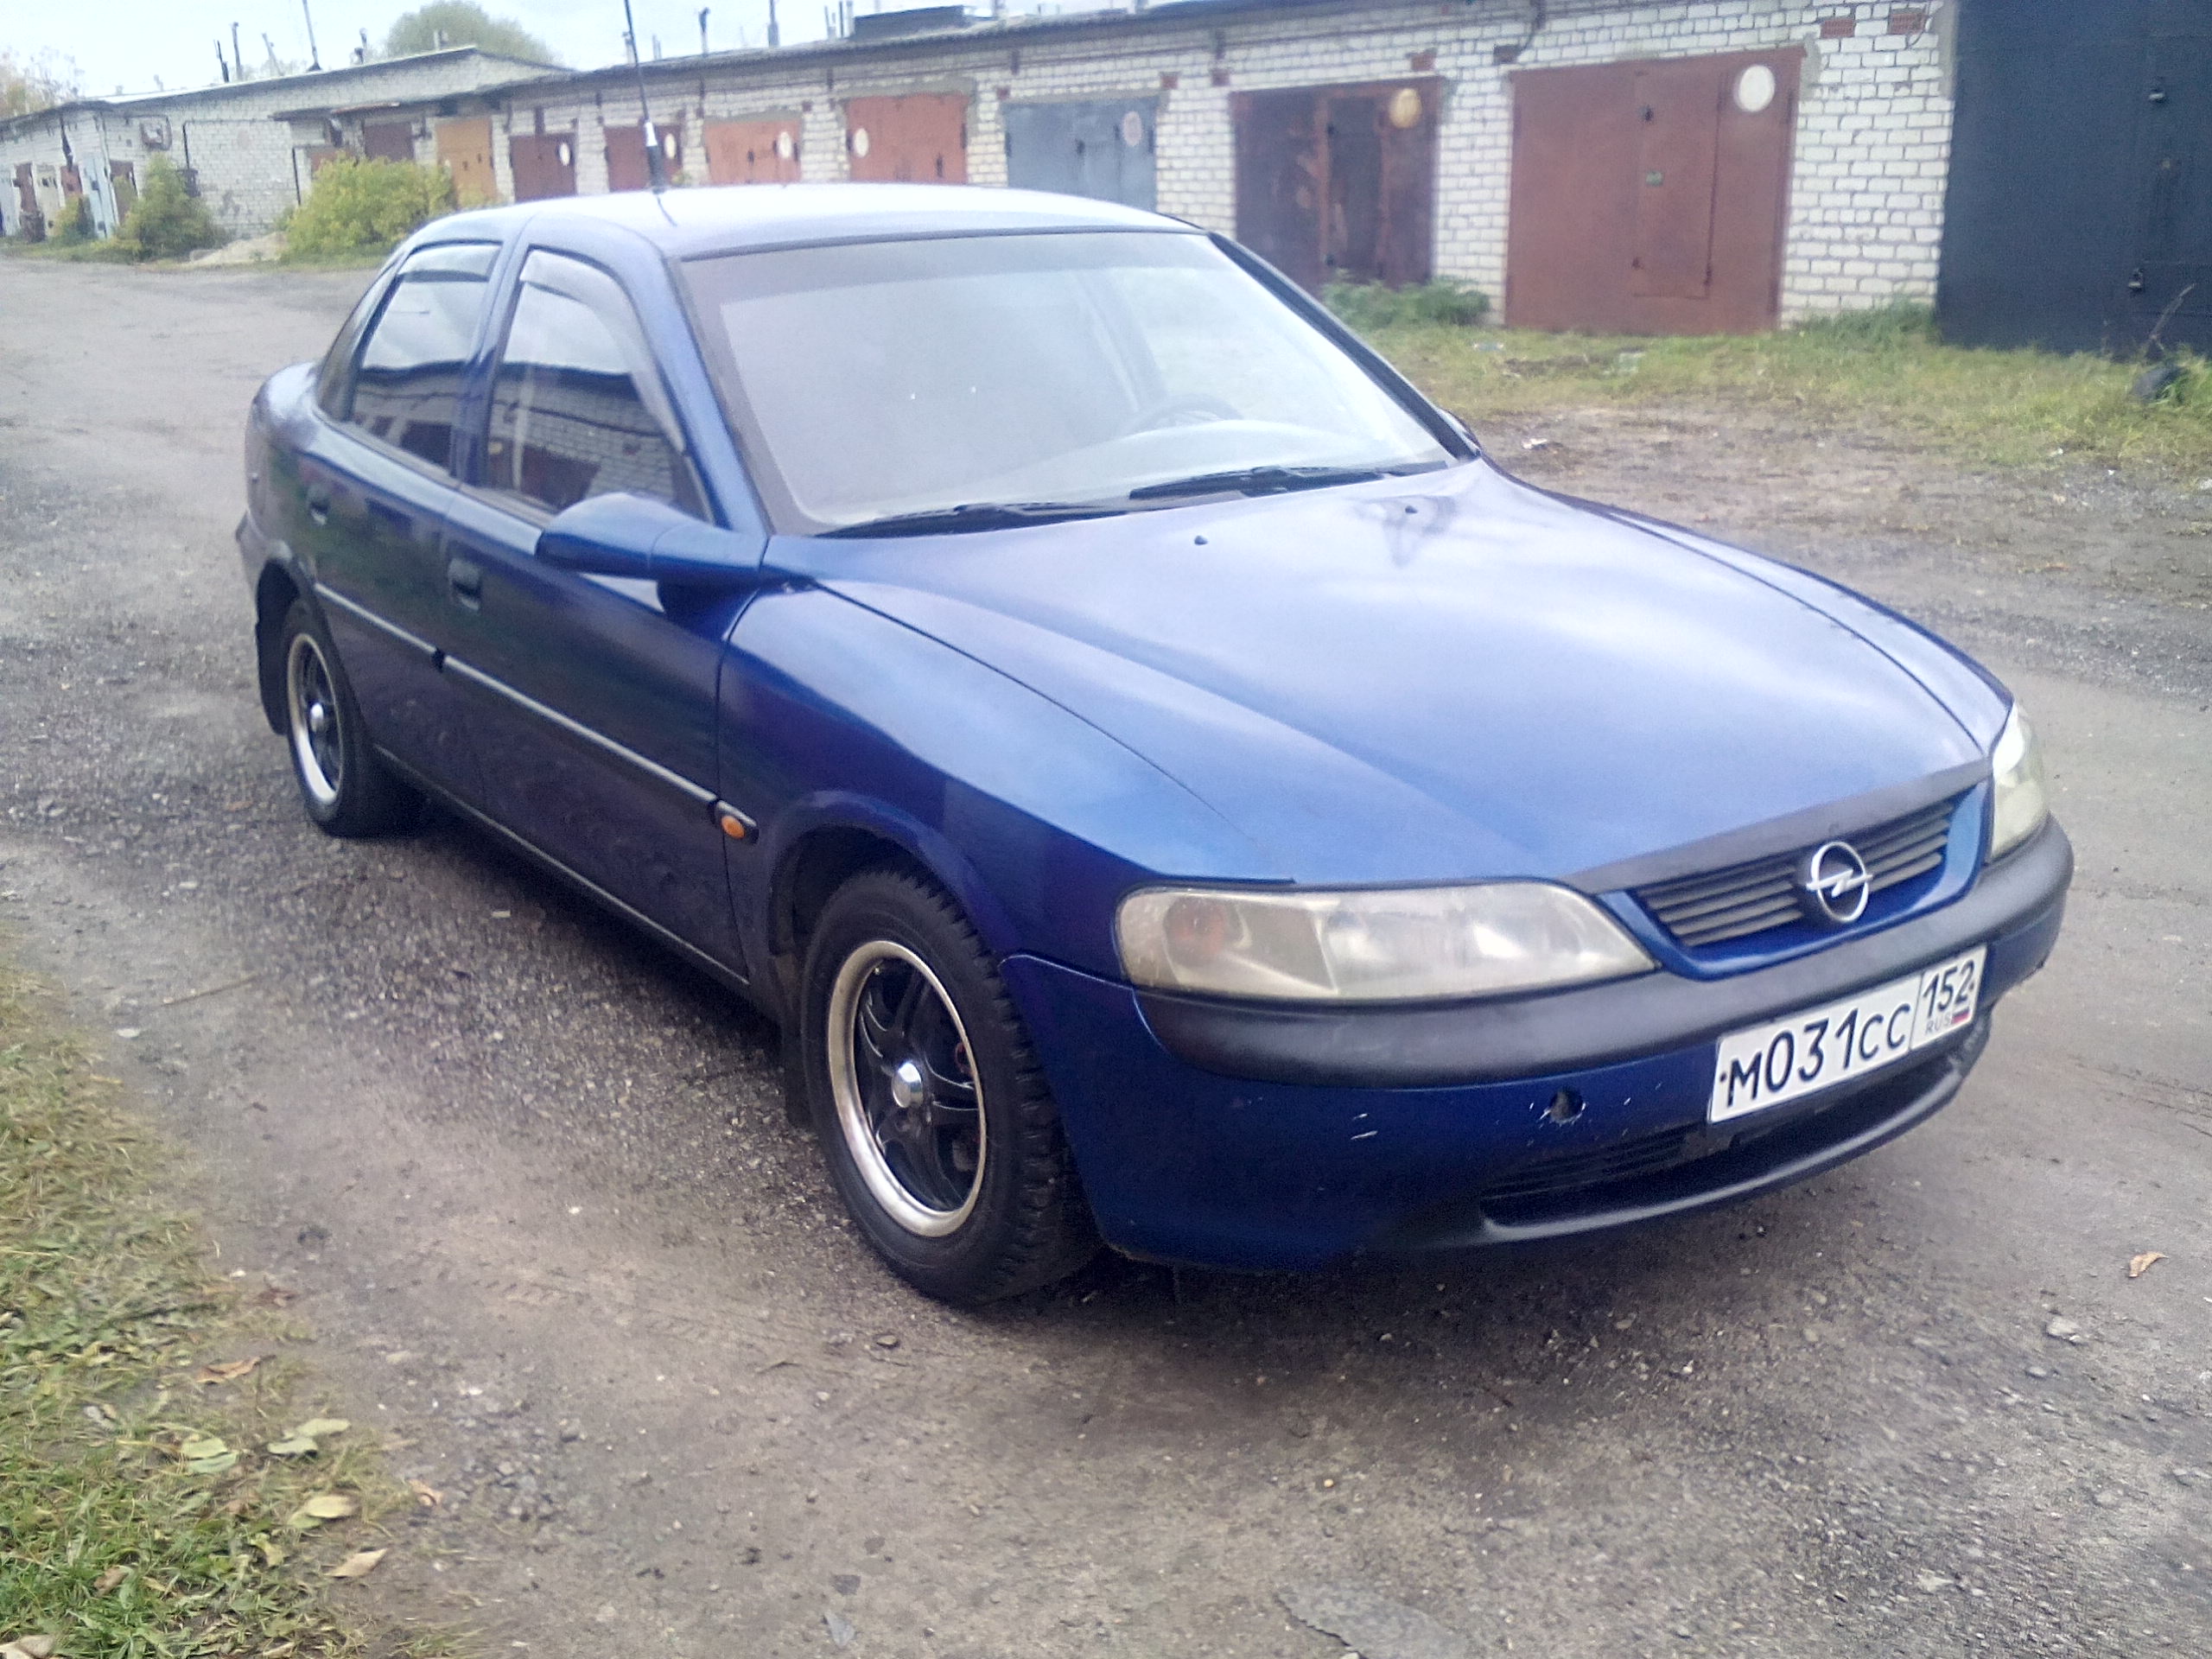 Куплю иномарку до 350000. Опель седан 1997. Опель седан 1997 диско. Спортивный Opel седан 1997 год. Опель седан синий.